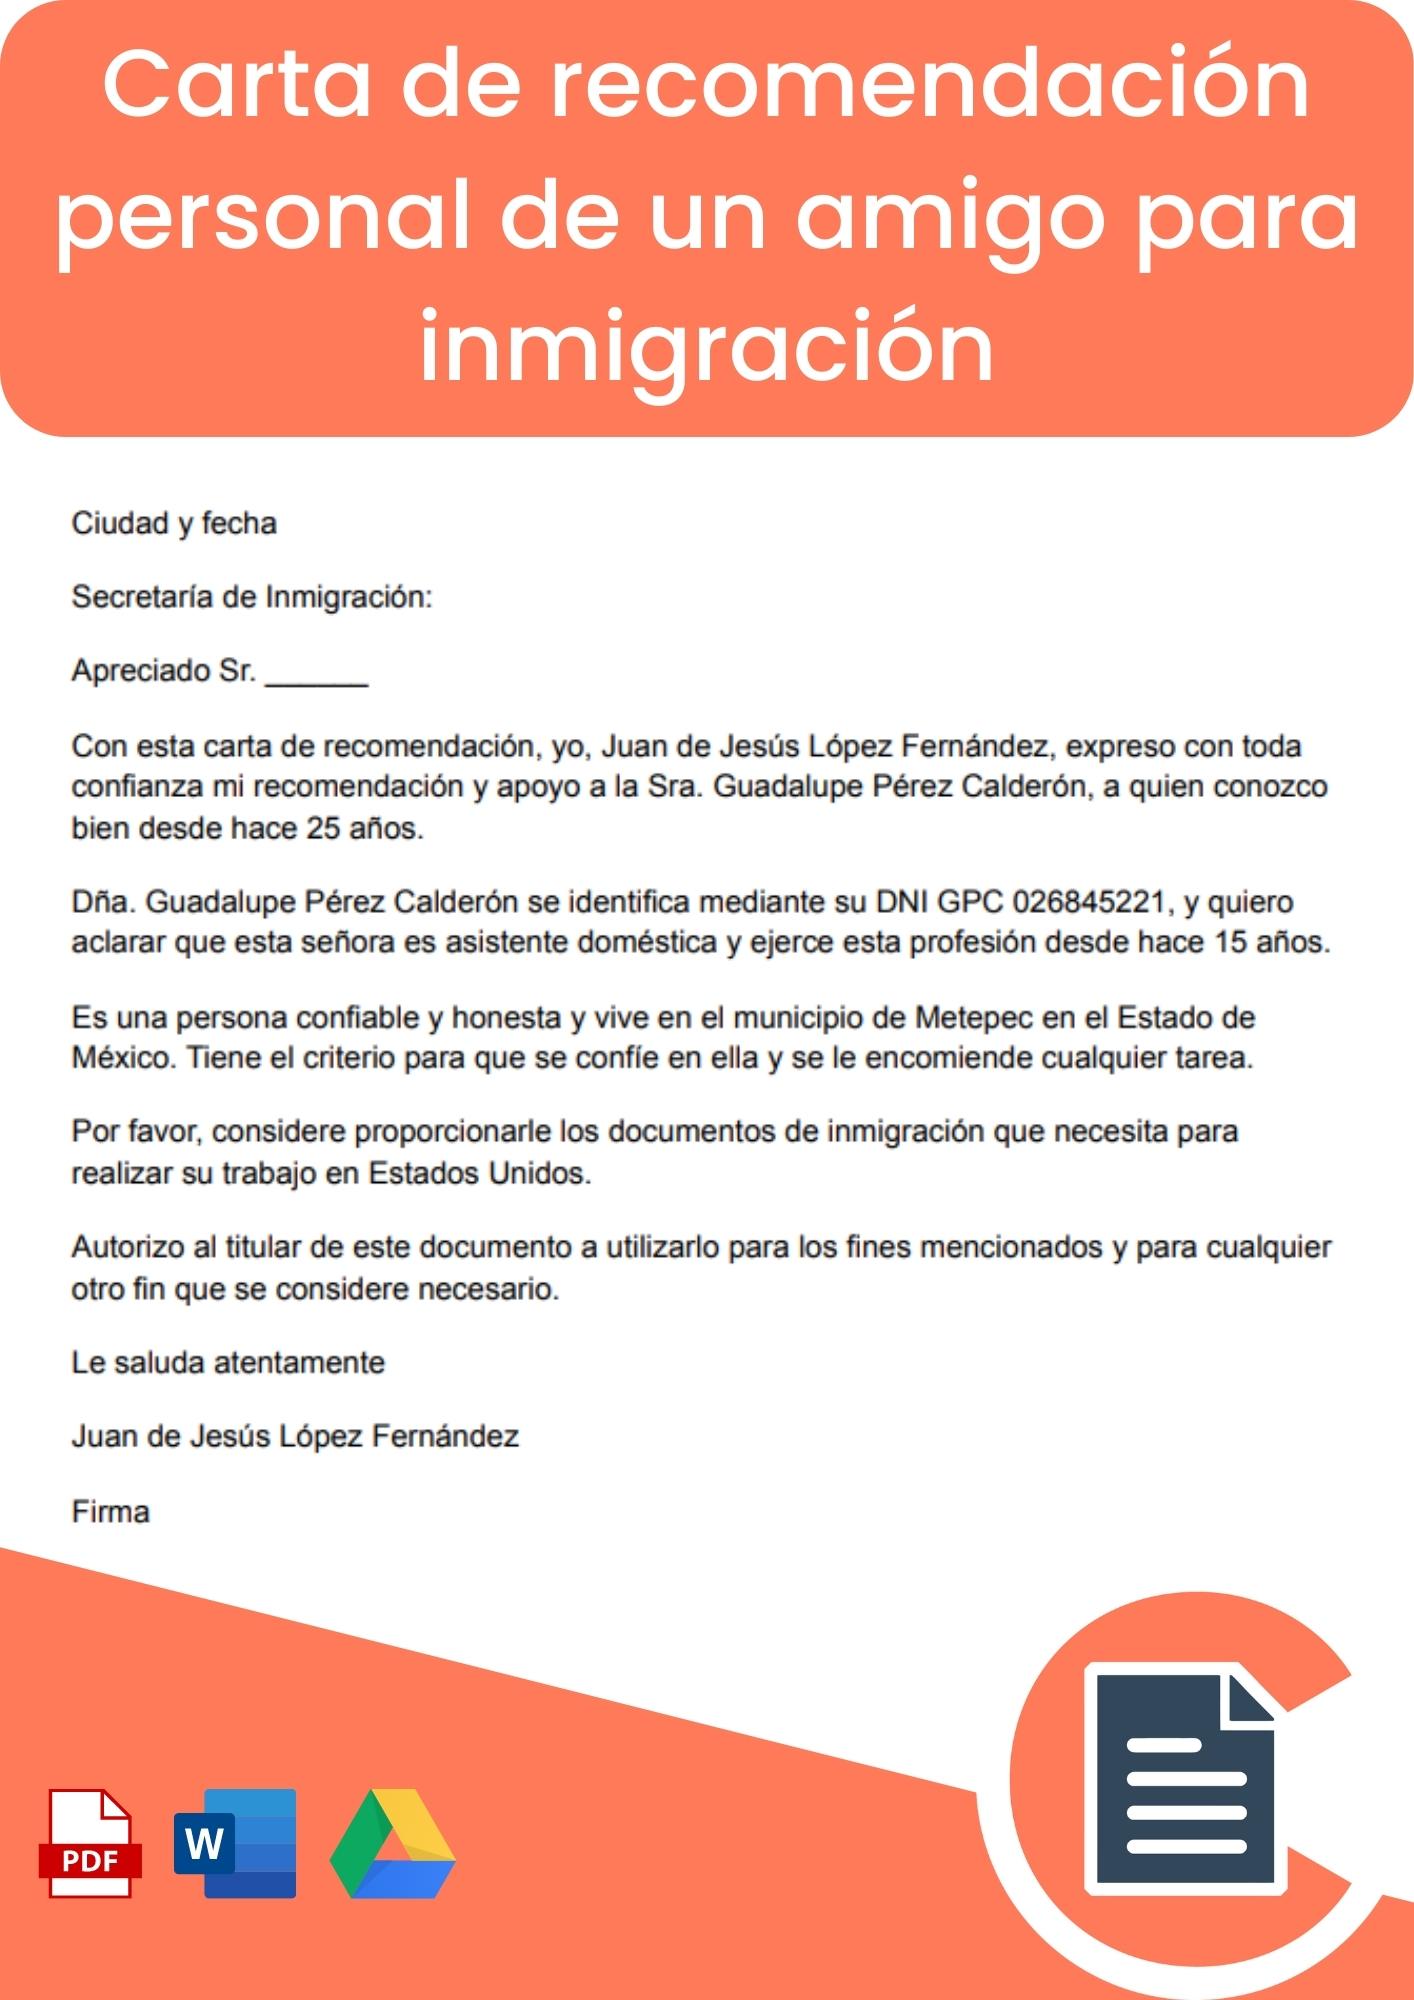 Carta de recomendación personal de un amigo para inmigración